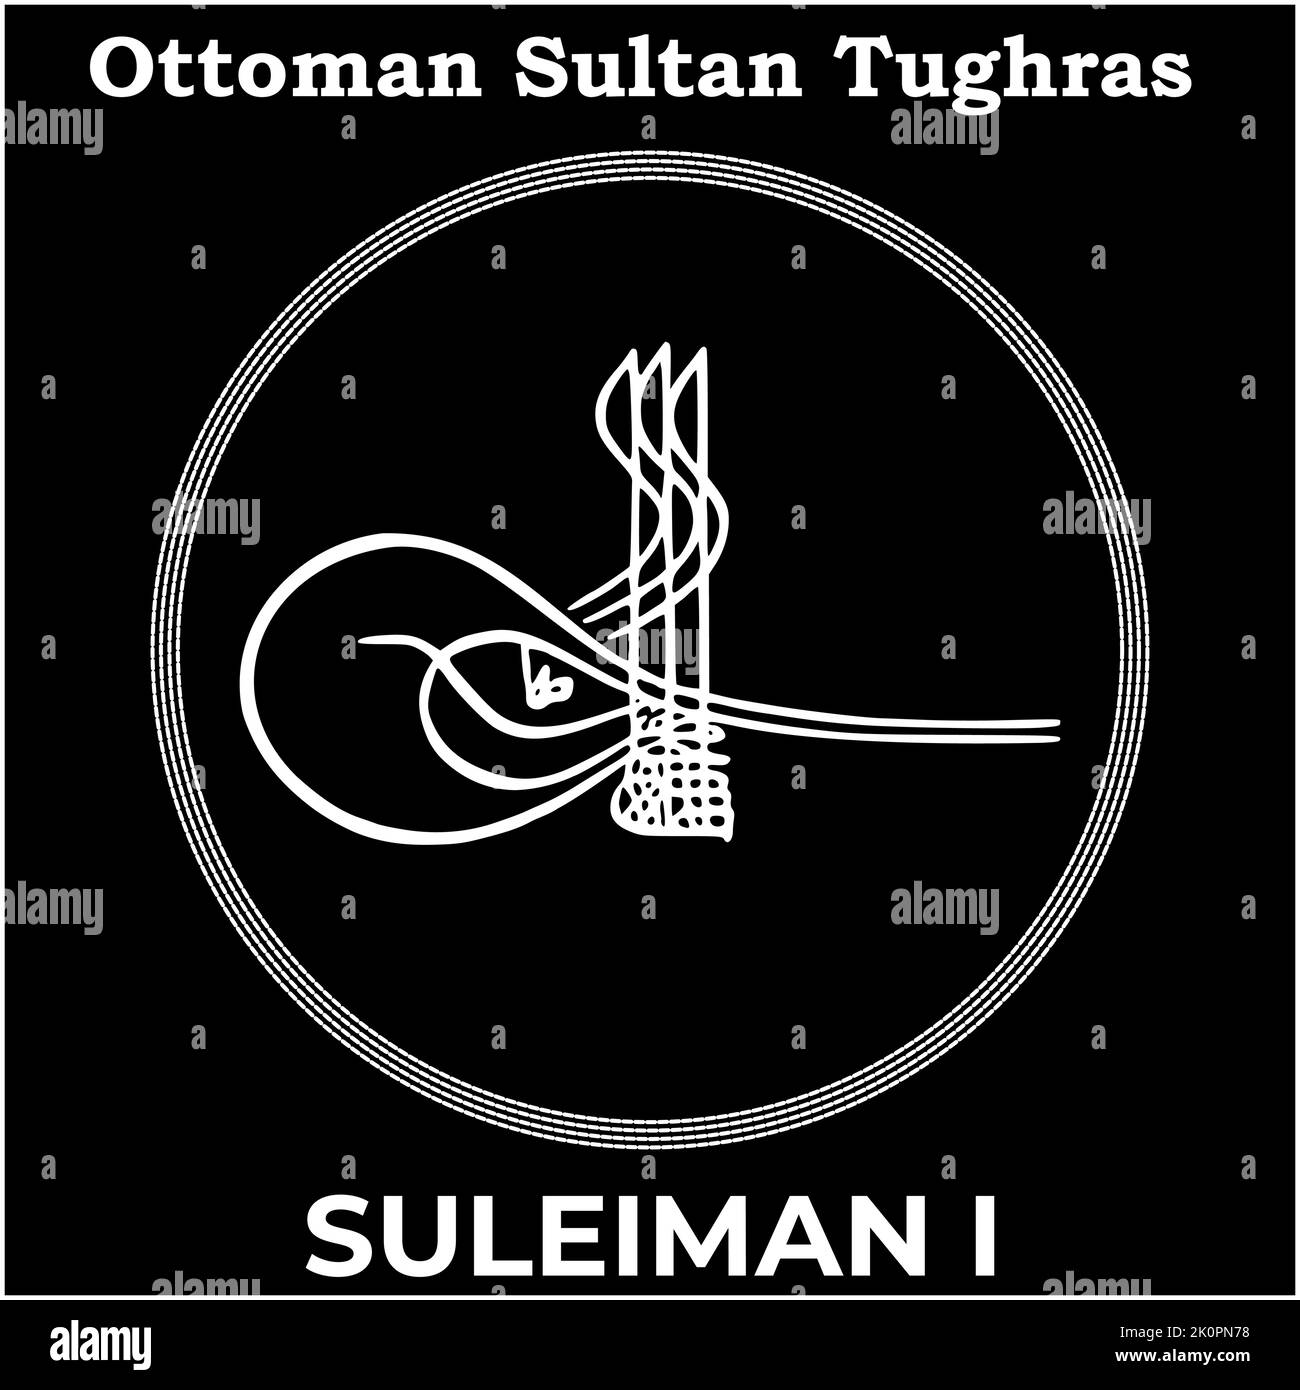 Vektorbild mit Tughra-Signatur des osmanischen zehnten Sultans Suleiman I (Suleiman der prächtige), Tughra von Suleiman I mit schwarzem Hintergrund. Stock Vektor